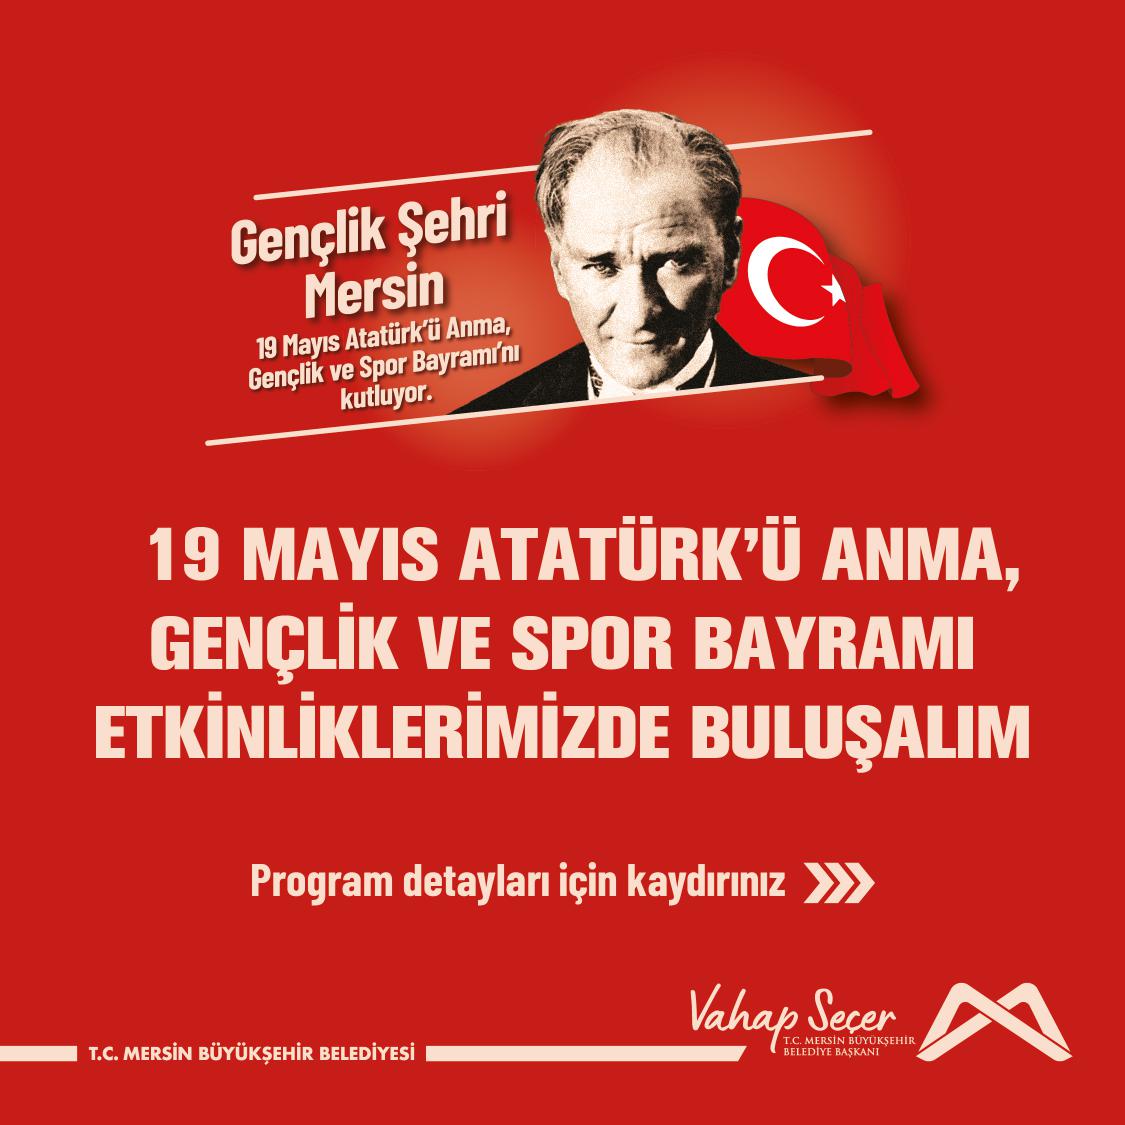 19 Mayıs Atatürk'ü Anma, Gençlik ve Spor Bayramı Etkinliklerinde buluşalım!